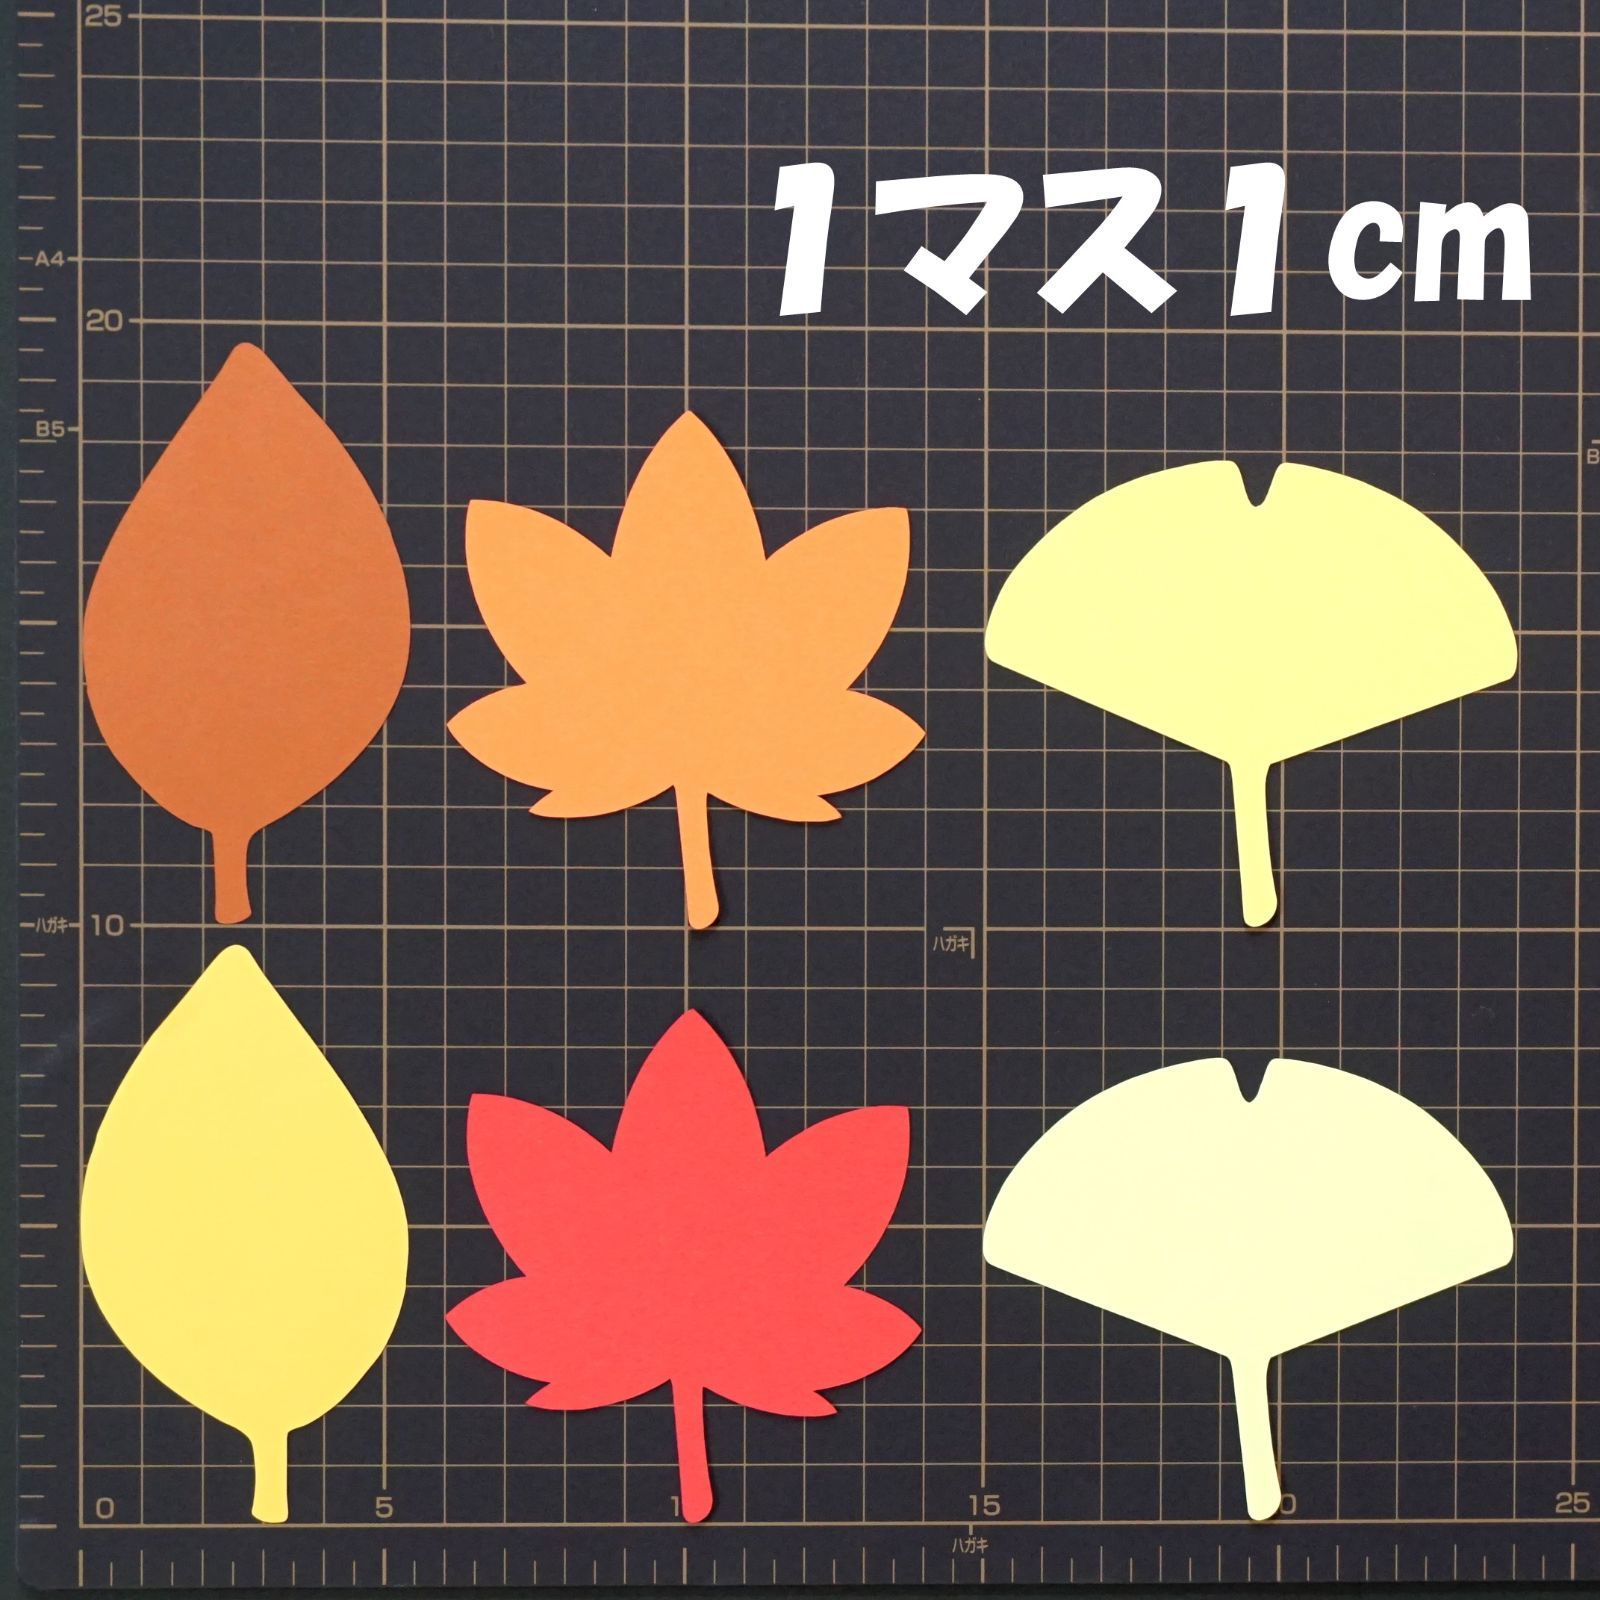 メルカリshops 秋の葉っぱ 落ち葉 紅葉mix もみじ イチョウ 他 180枚 壁面飾り 工作に